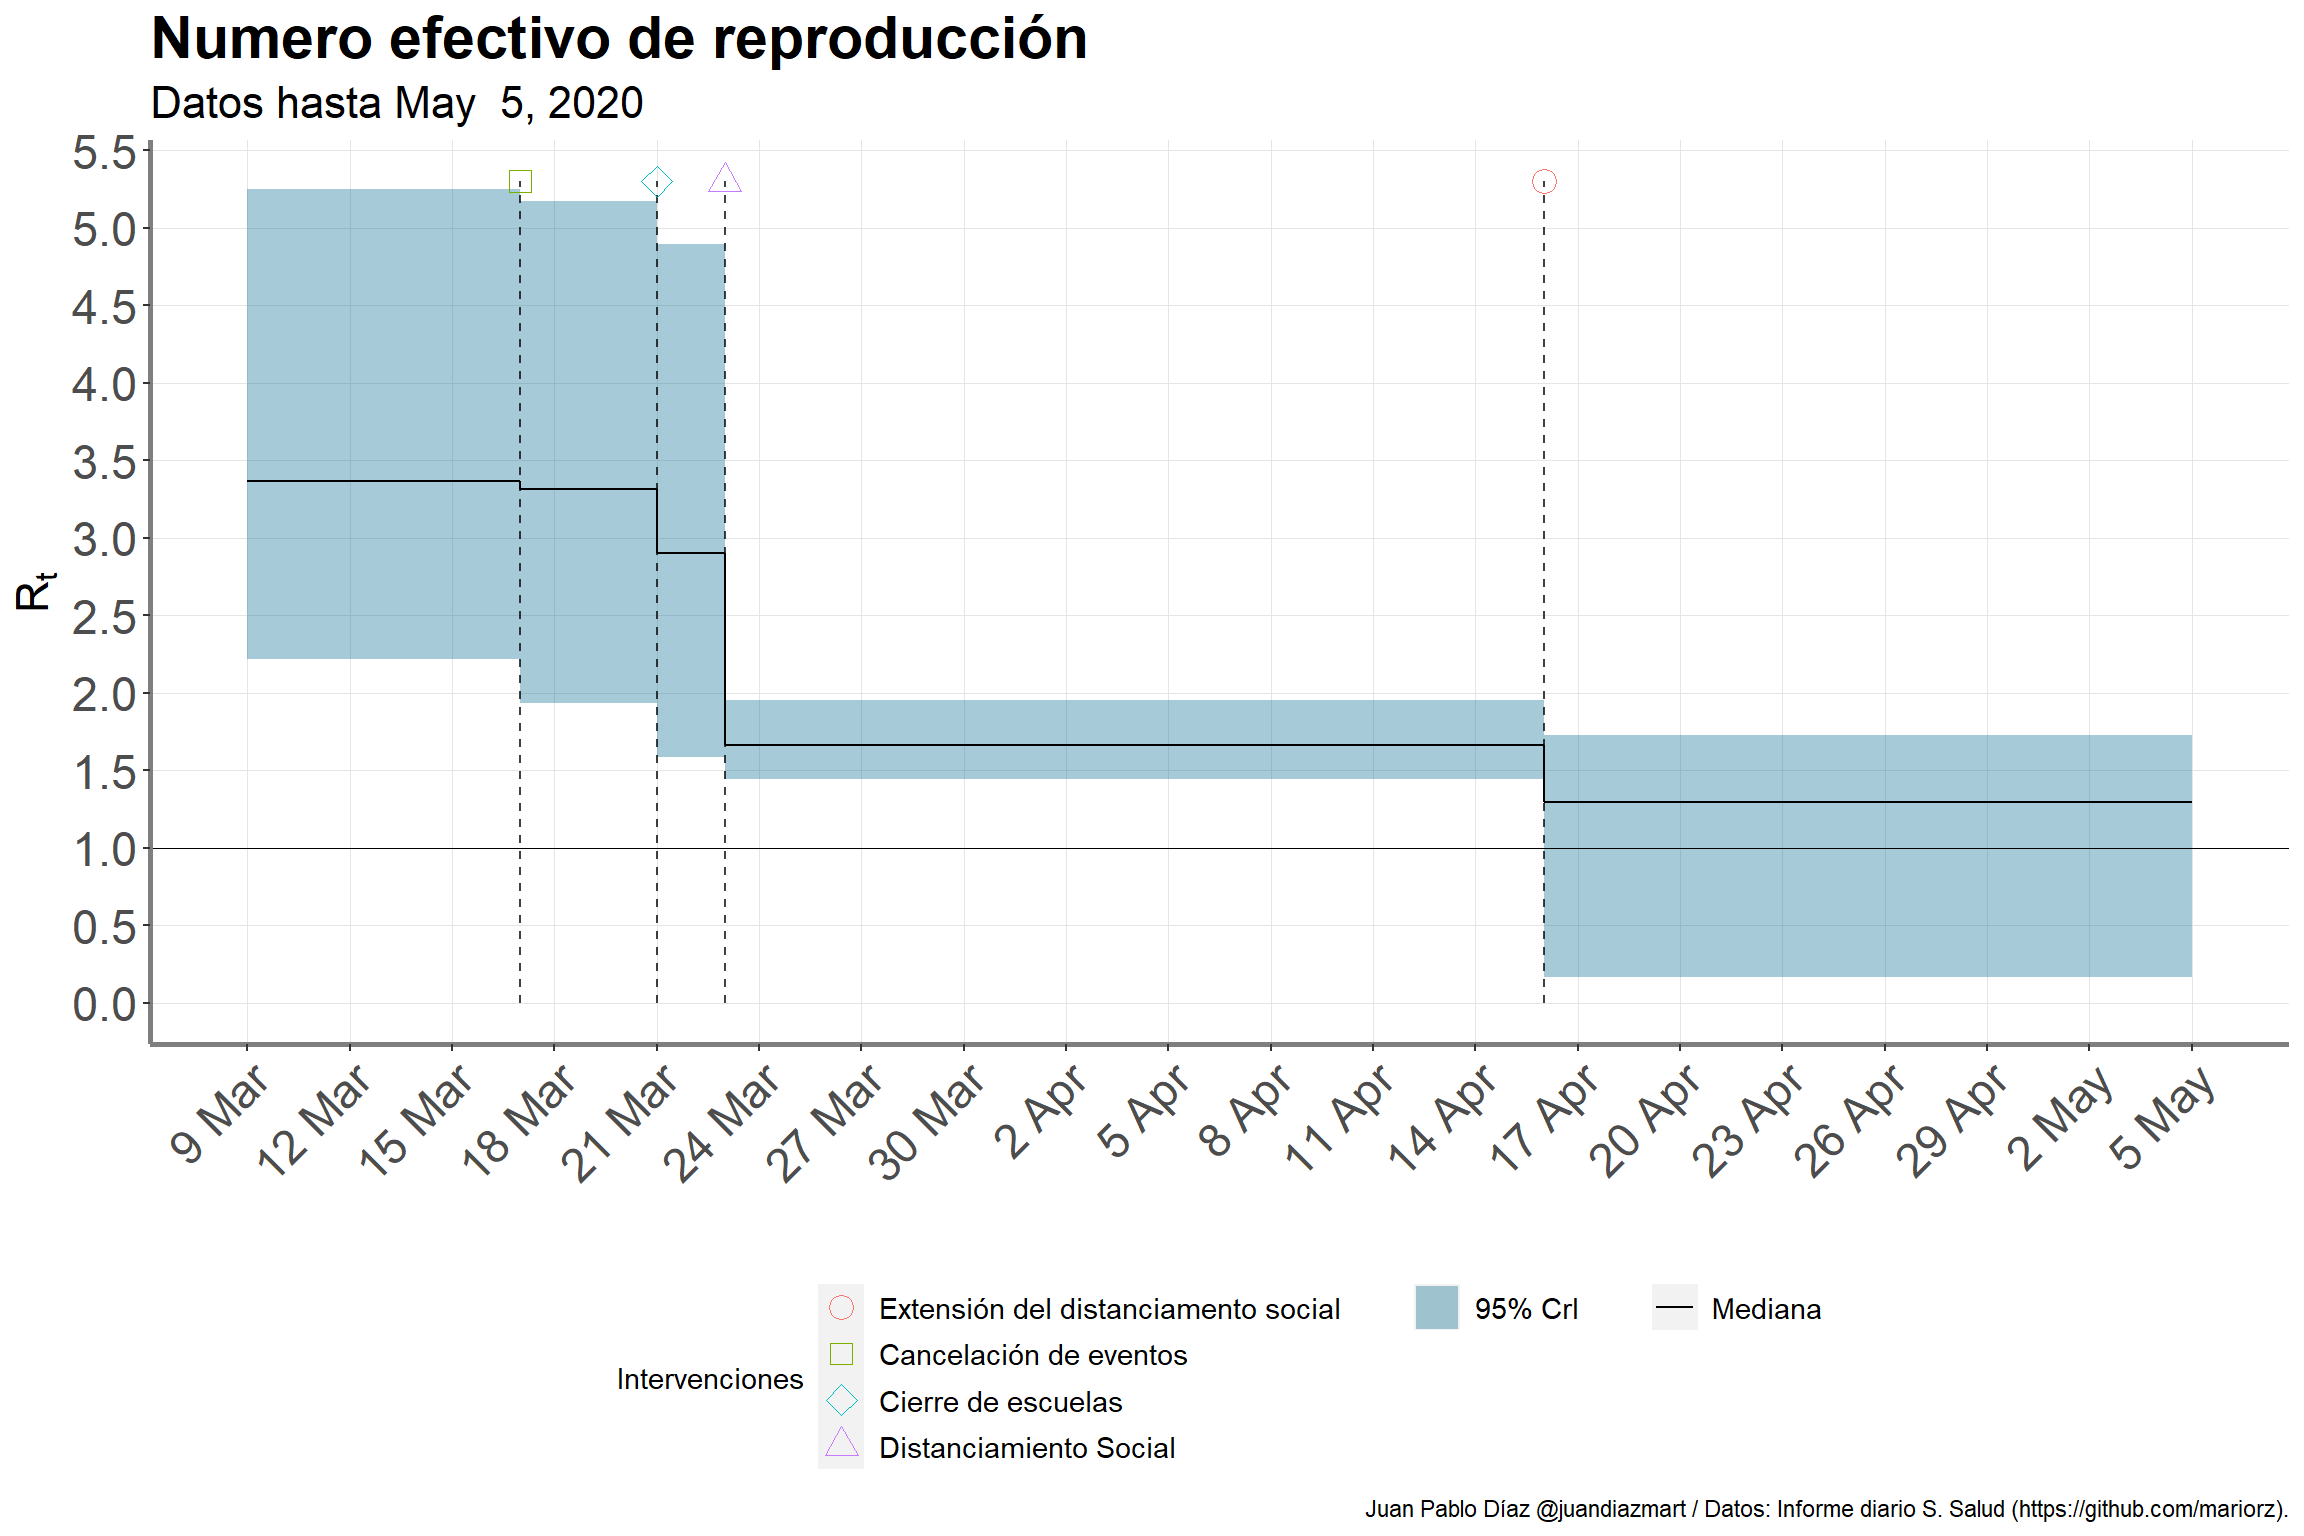 Efecto de las intervenciones en el número efectivo de reproducción